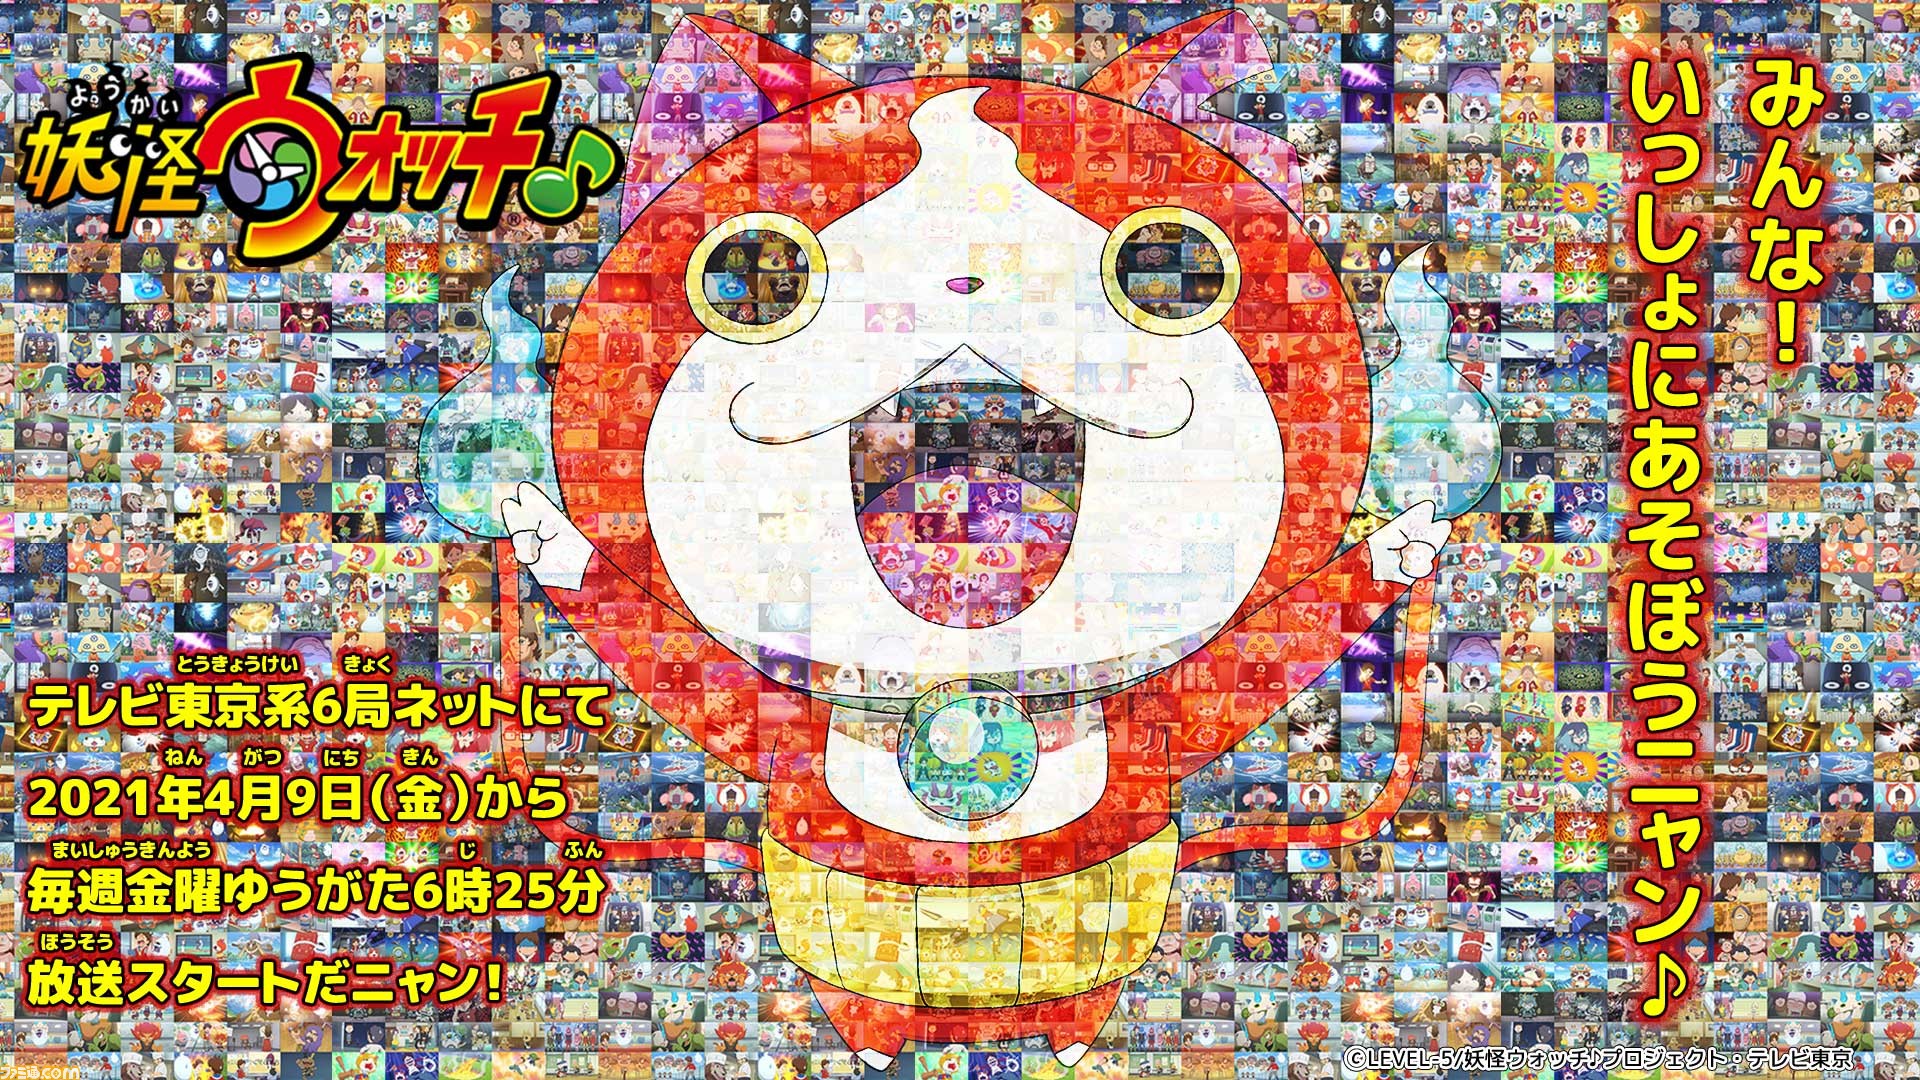 妖怪ウォッチ テレビアニメ新シリーズ 妖怪ウォッチ が4月9日より放送開始 ゲームベスト版も発売決定 ファミ通 Com